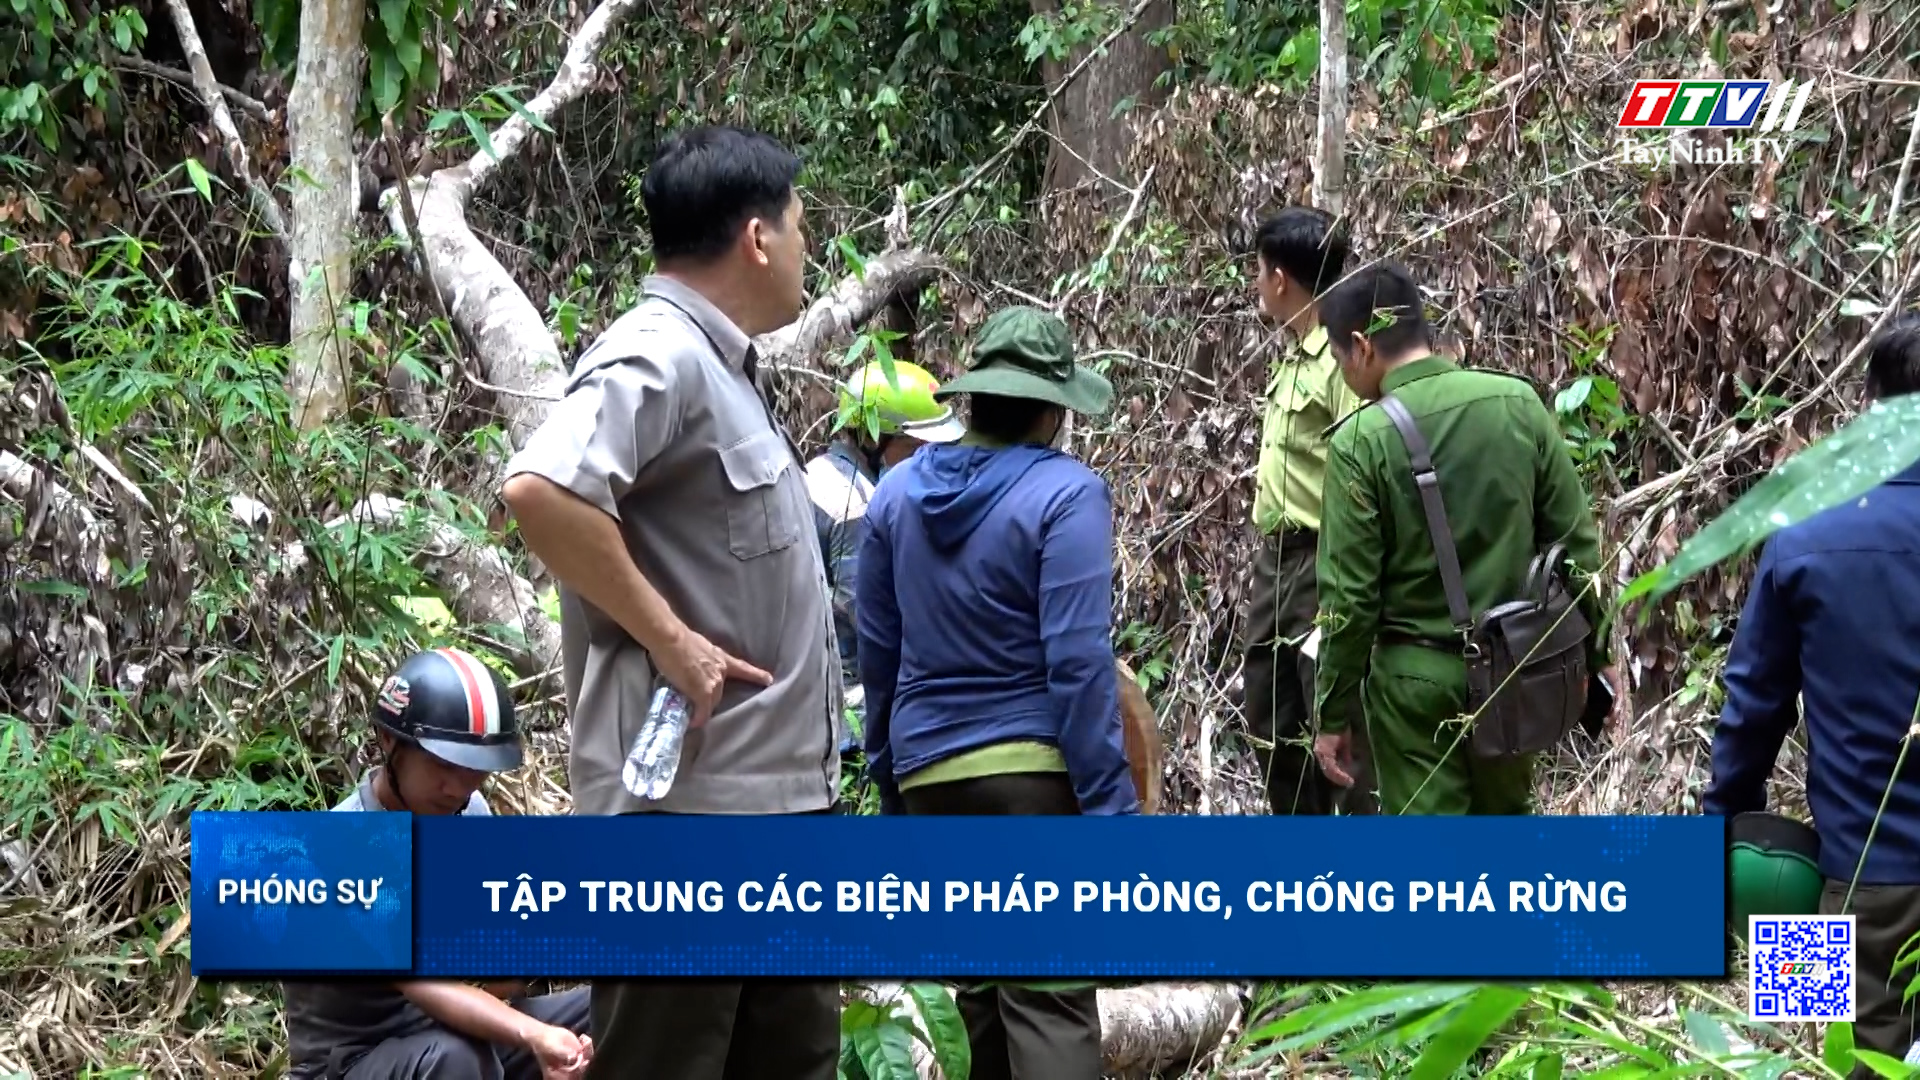 Tập trung các biện pháp phòng, chống phá rừng | TayNinhTV